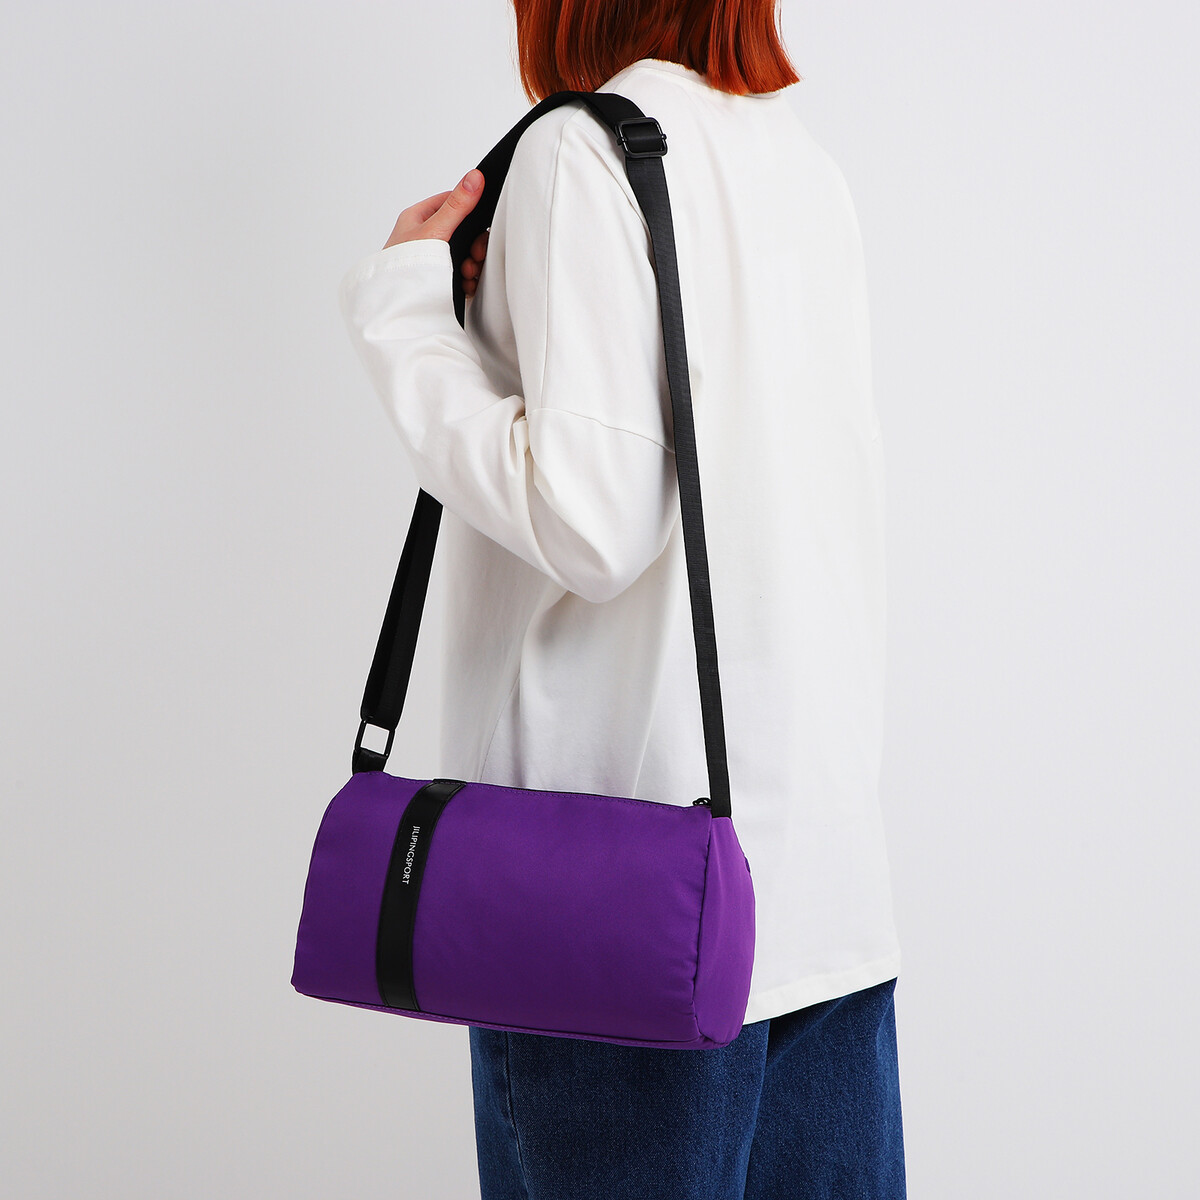 Сумка молодежная на молнии, цвет фиолетовый сумка хозяйственная без застежки фиолетовый